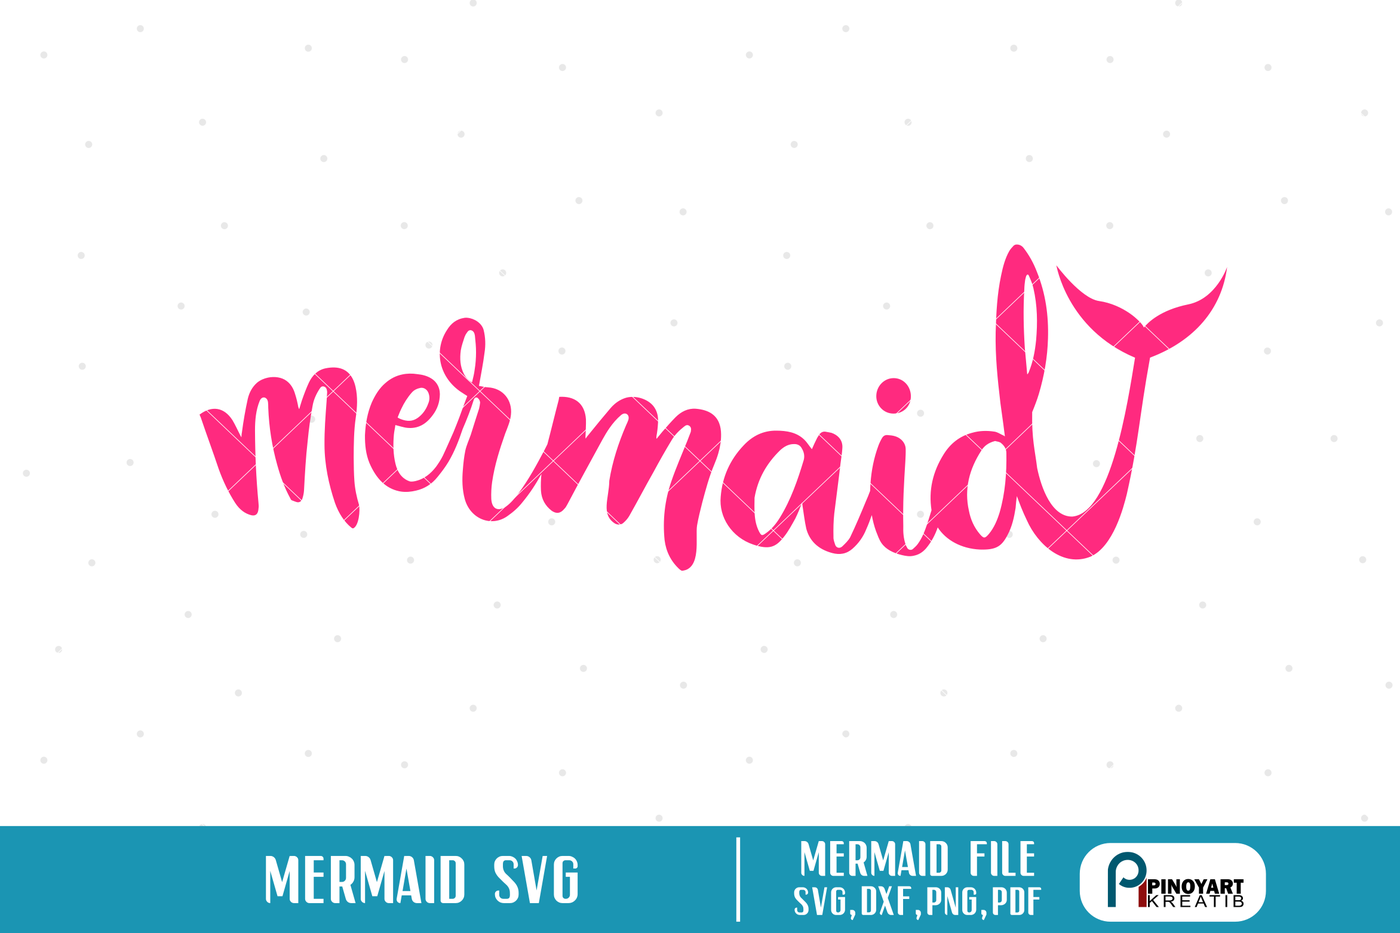 Download mermaid svg file,mermaid svg,mermaid cut file,mermaid dxf ...